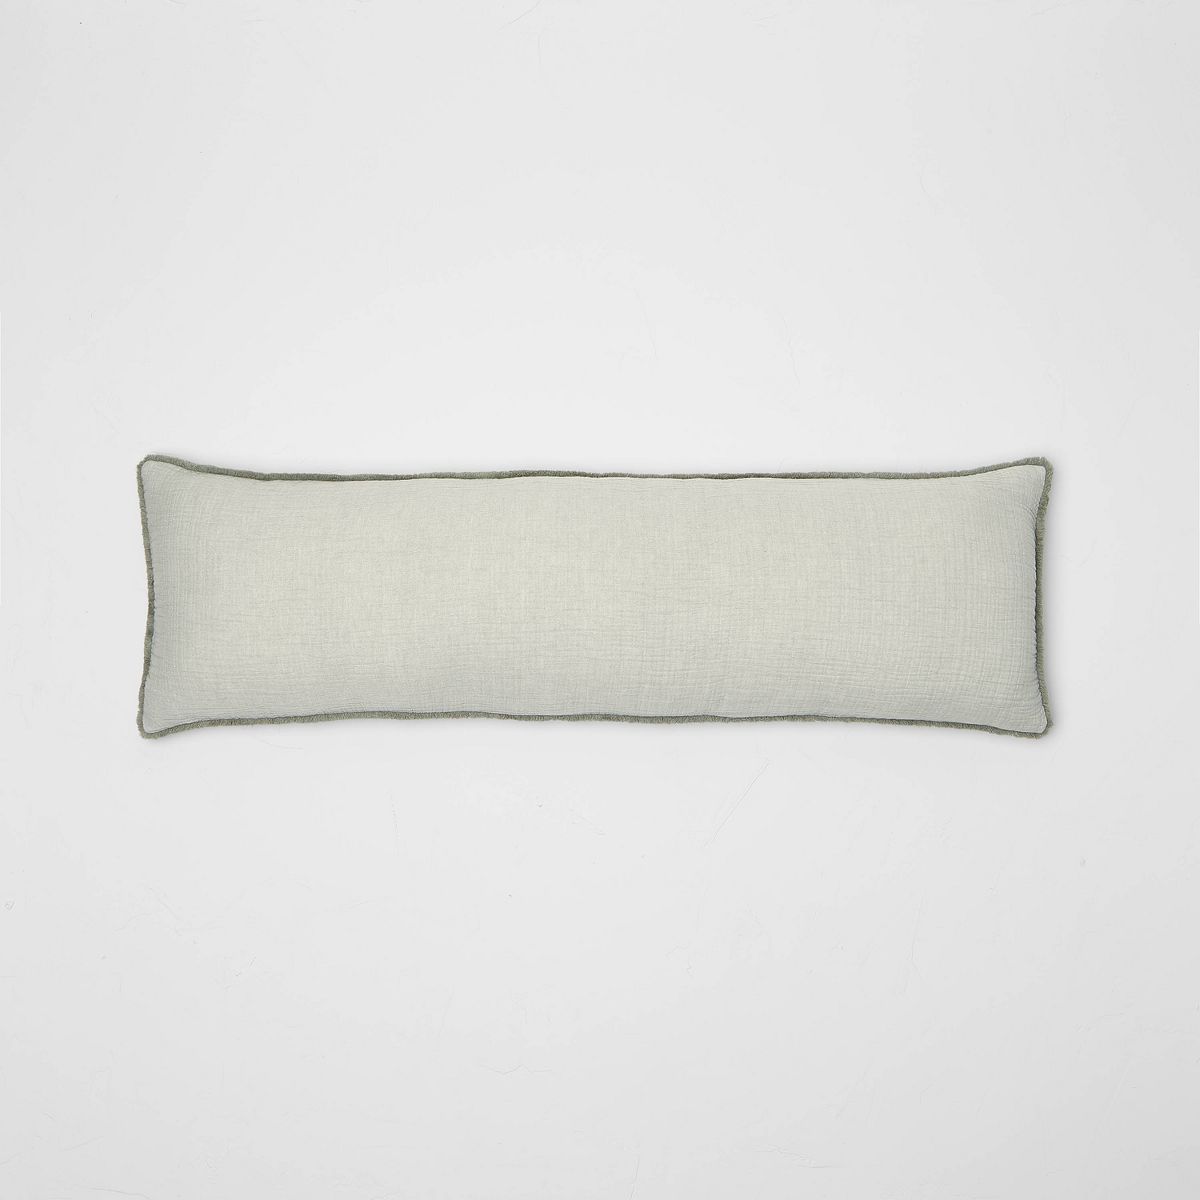 Lumbar Textured Chambray Cotton Bed Decorative Throw Pillow  - Casaluna™ | Target